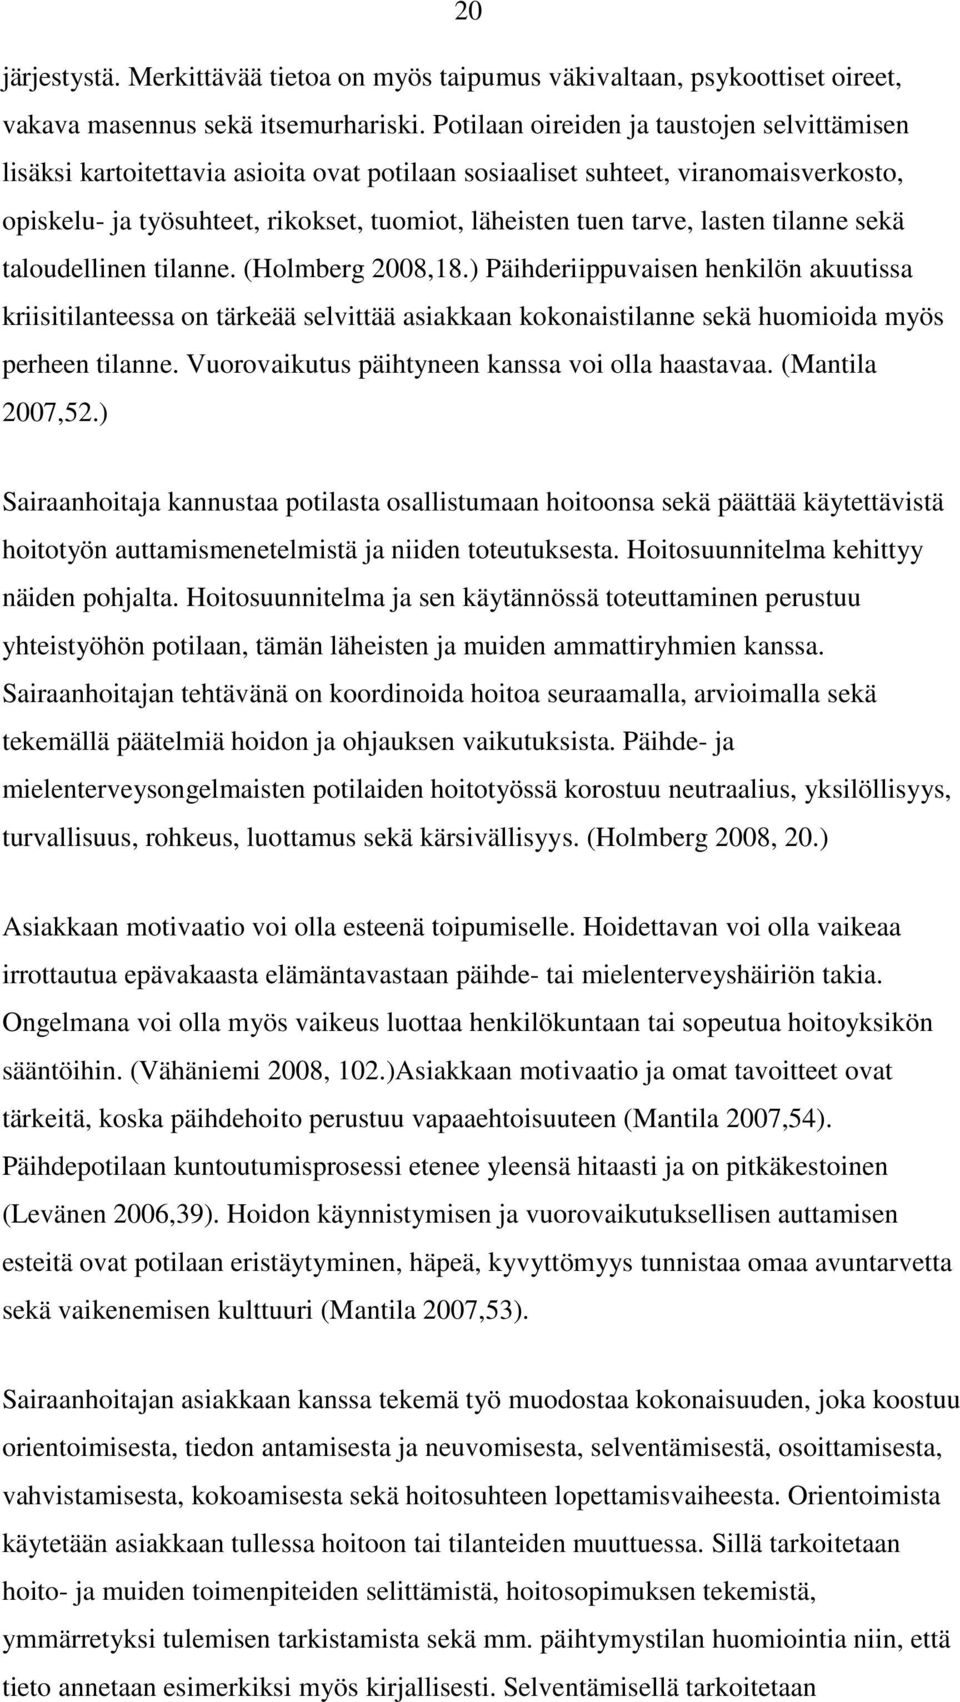 lasten tilanne sekä taloudellinen tilanne. (Holmberg 2008,18.